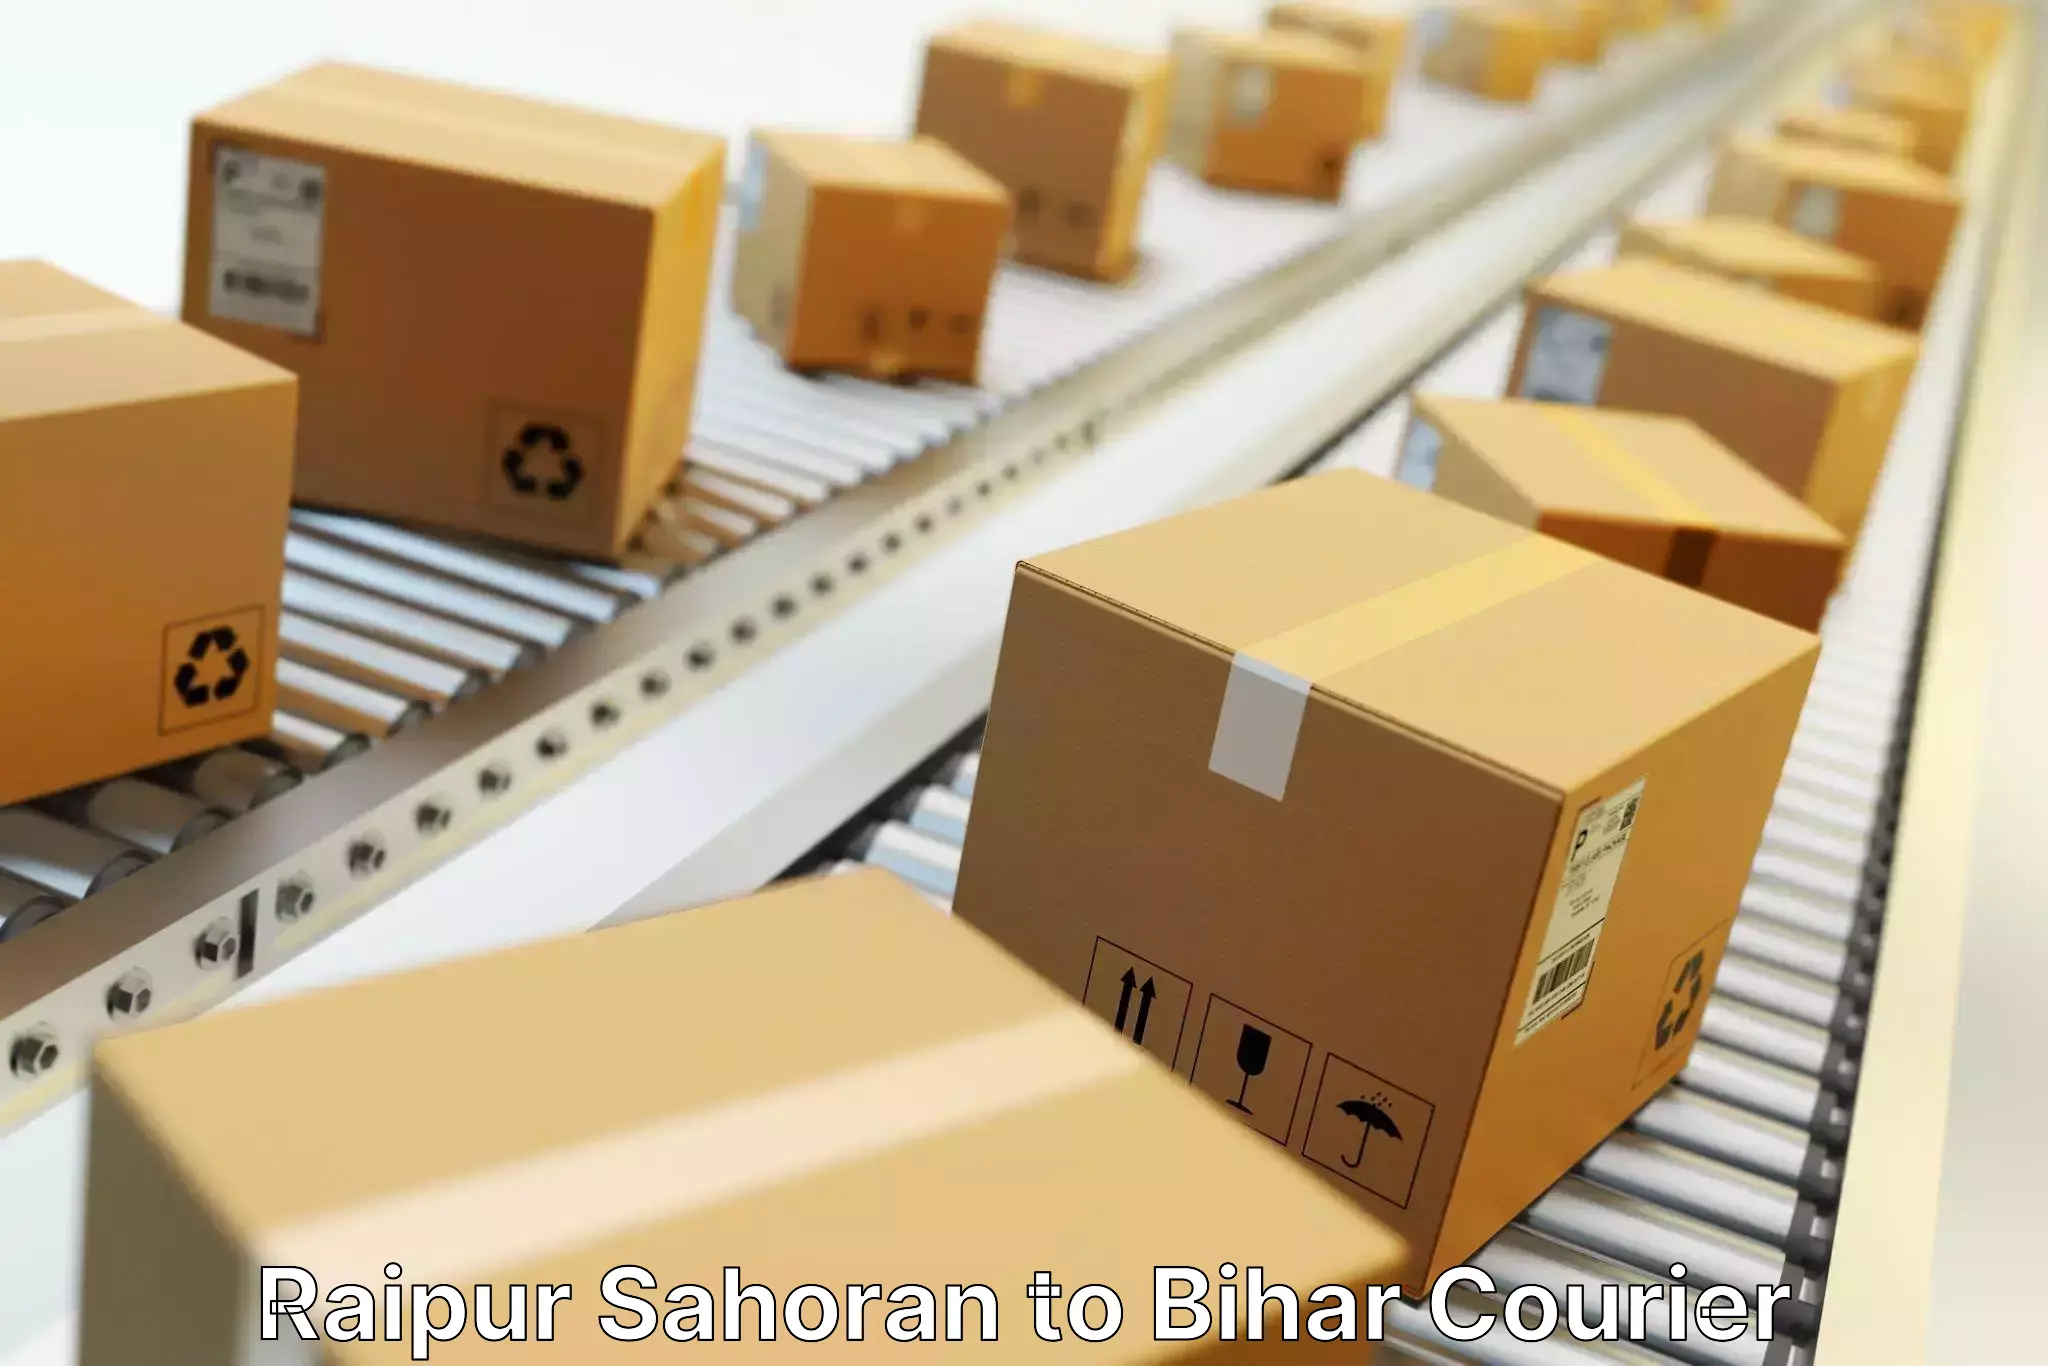 Package delivery network Raipur Sahoran to Wazirganj